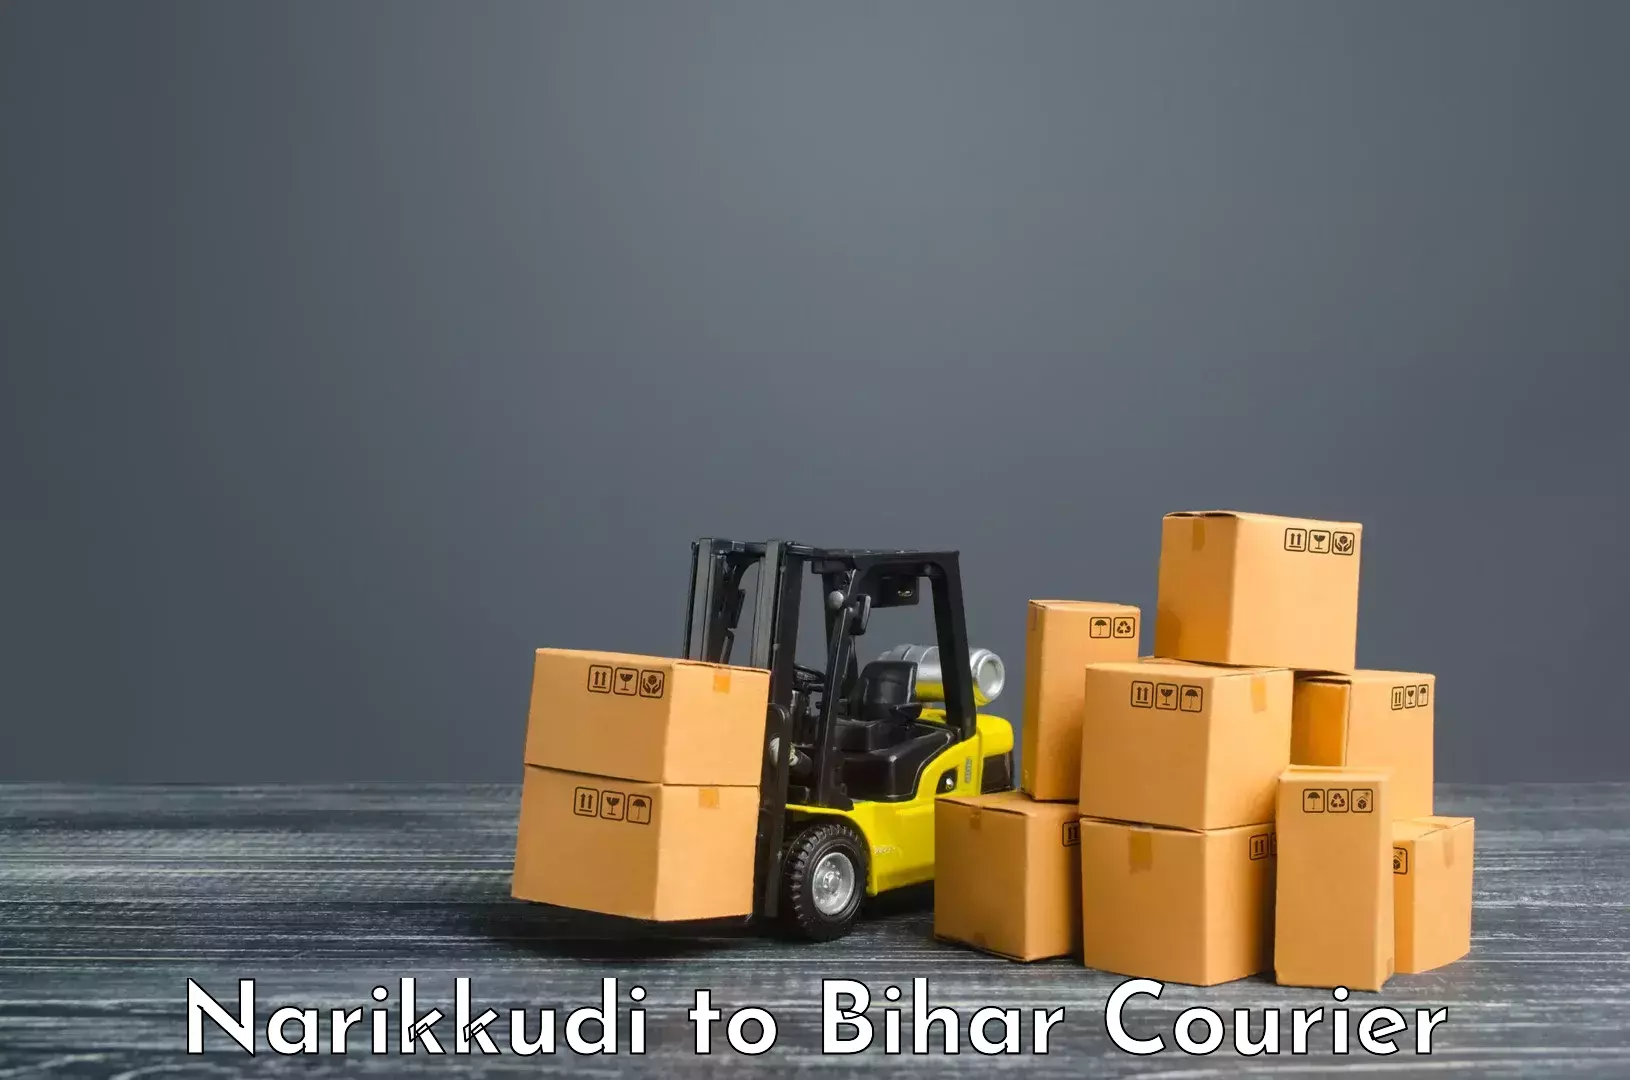 24/7 shipping services Narikkudi to Benipur